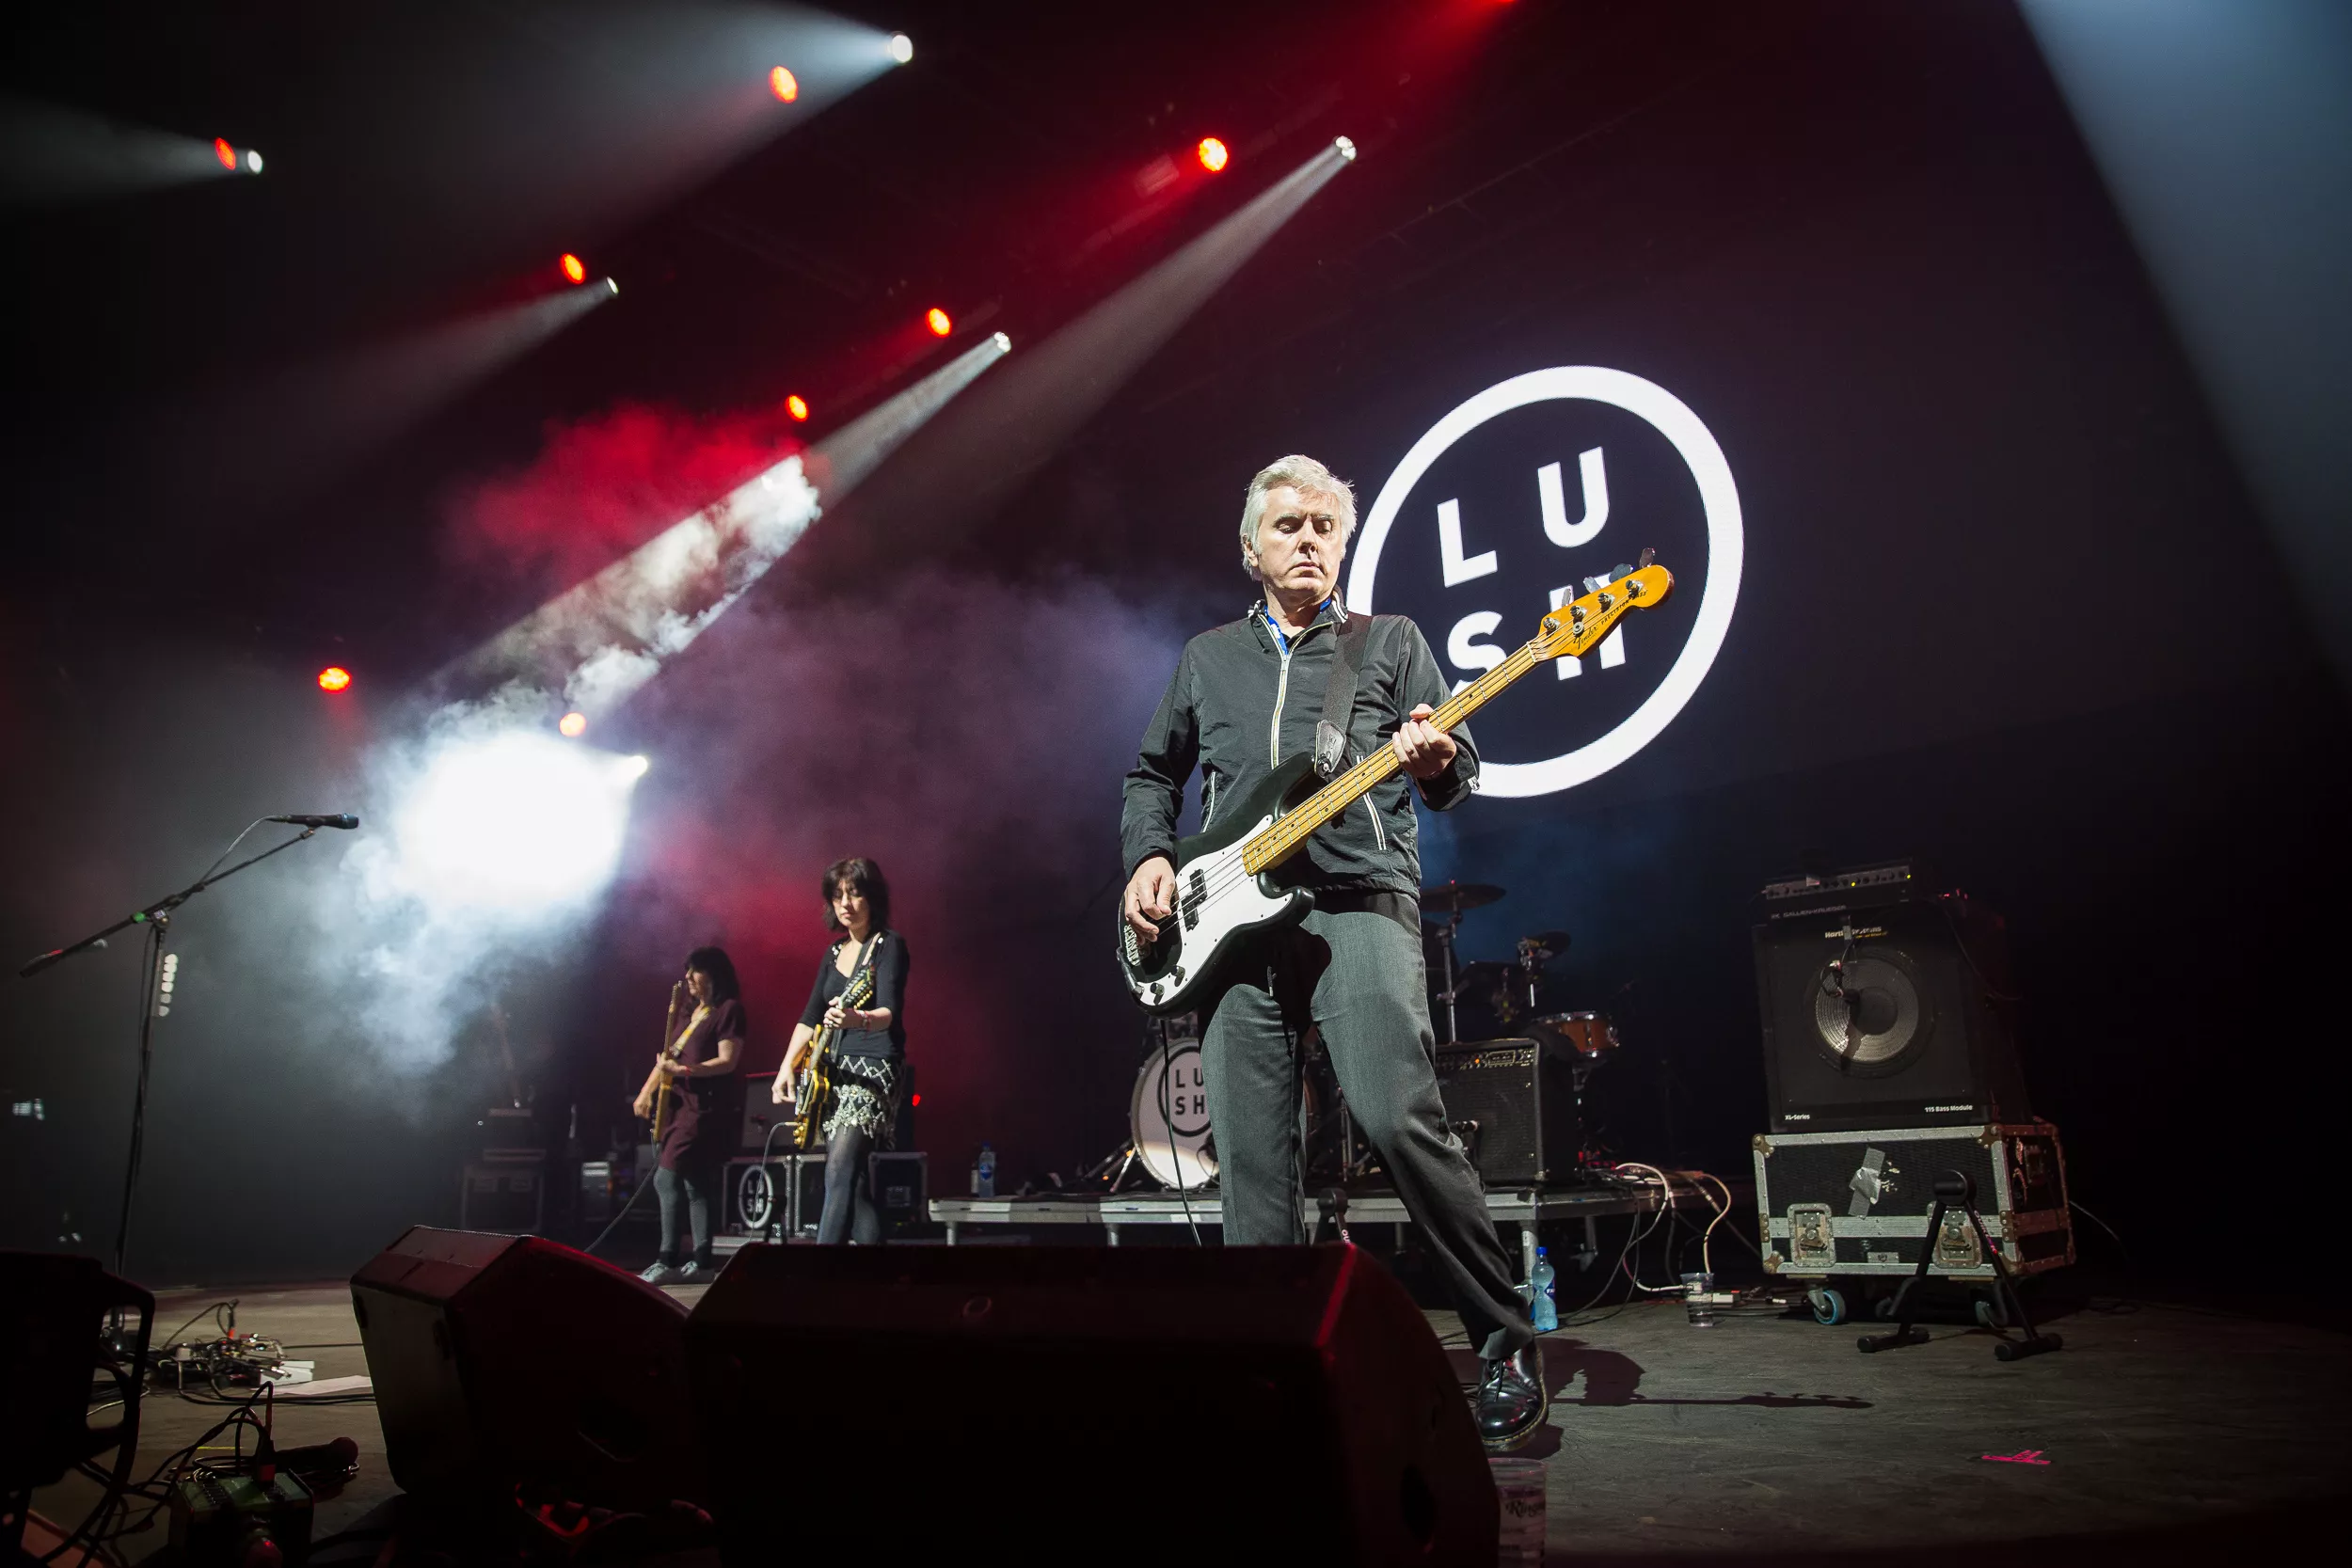 Lush kansellerer konserter etter at bassist melder sin avgang fra bandet